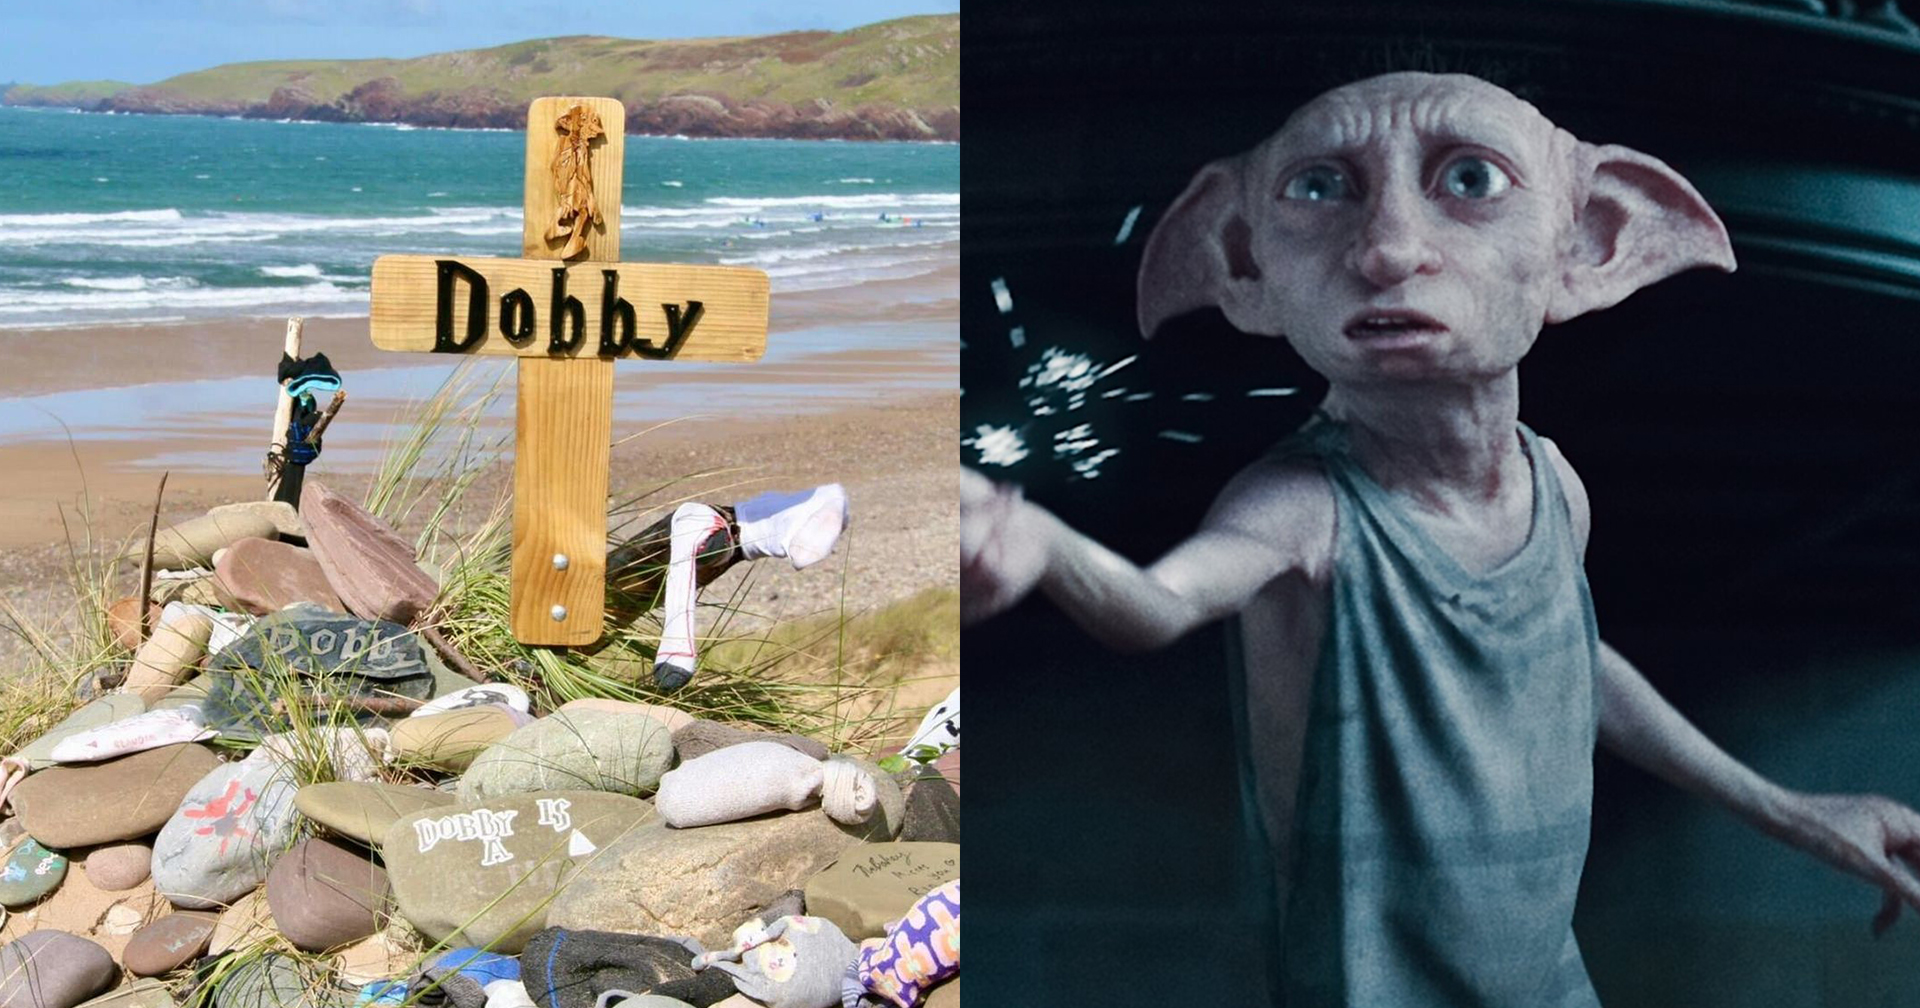 แฟน ๆ Harry Potter ร้องหน่วยงานรัฐ ยกเลิกรื้อถอนหลุมฝังศพ ‘Dobby’ ชี้เป็นสถานที่สำคัญทางจิตใจ